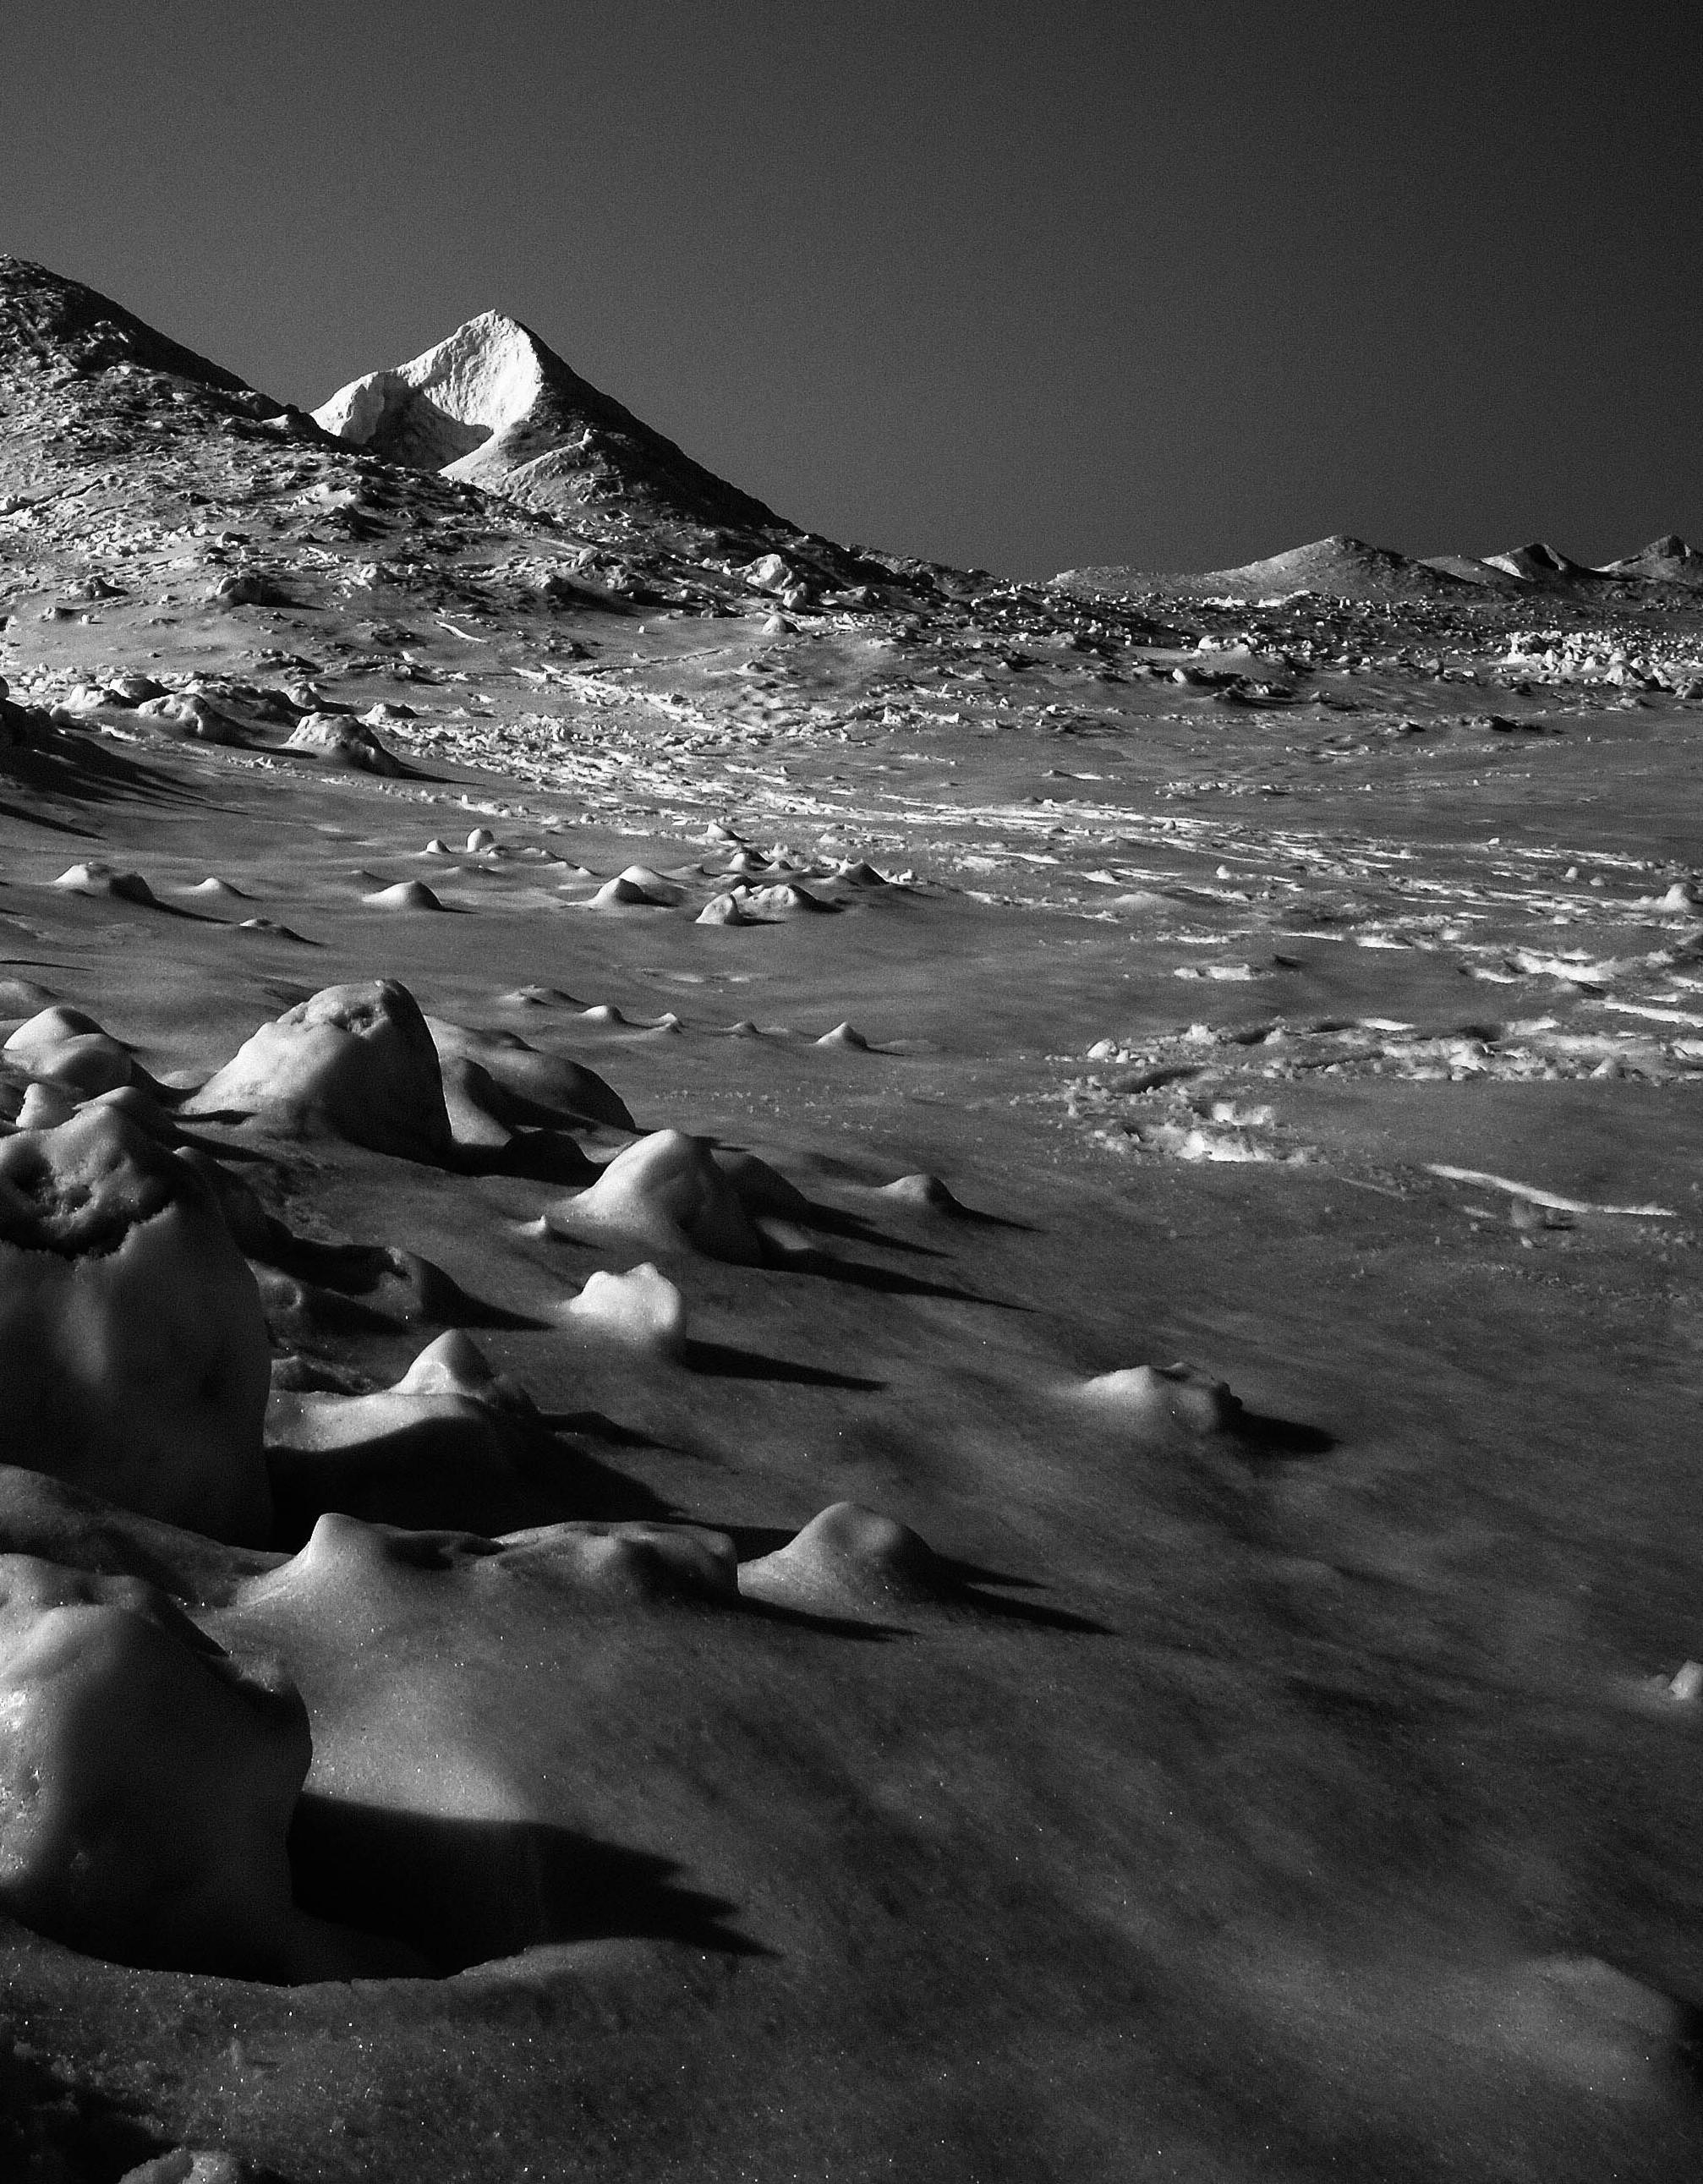 Mars on Earth, Michigan – Schwarz-Weiß-Foto von einer mit Schnee bedeckten Landschaft aus dem Mars – Photograph von Kirill Polevoy